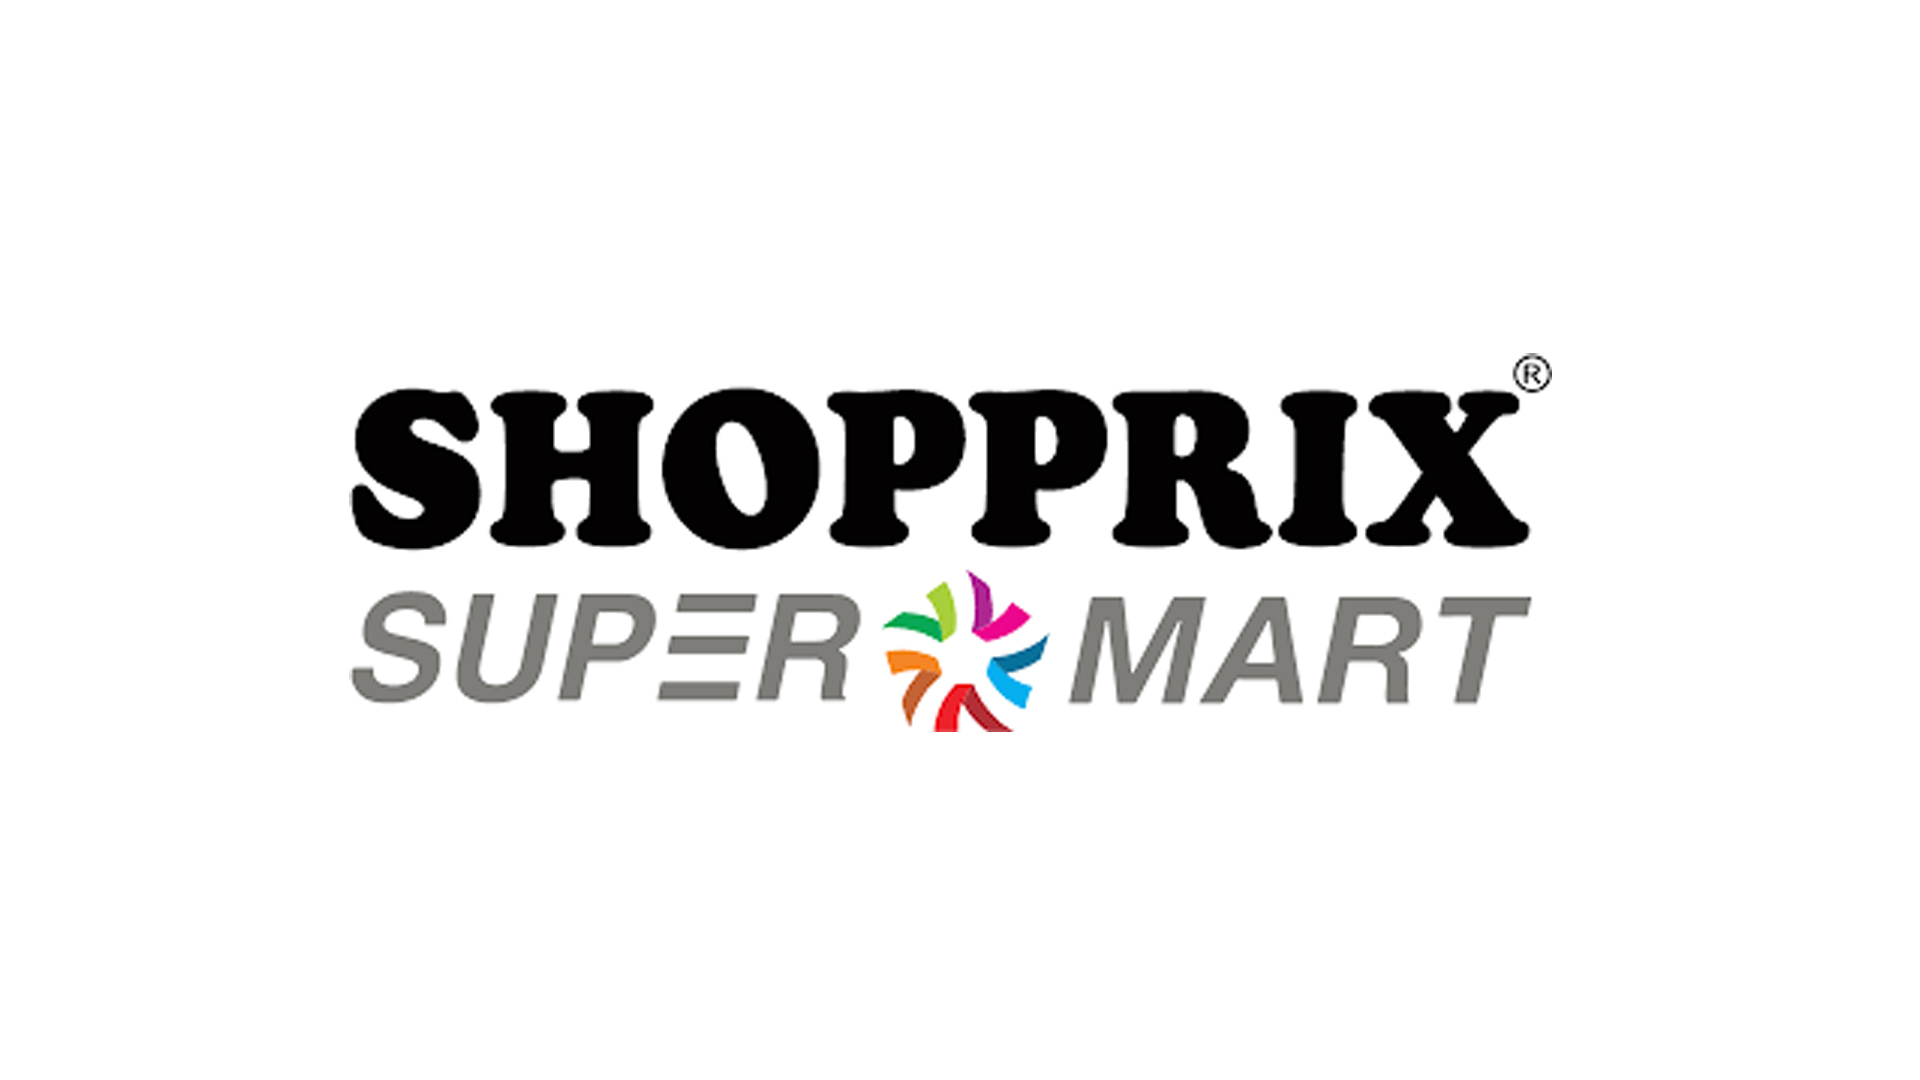 shopprix